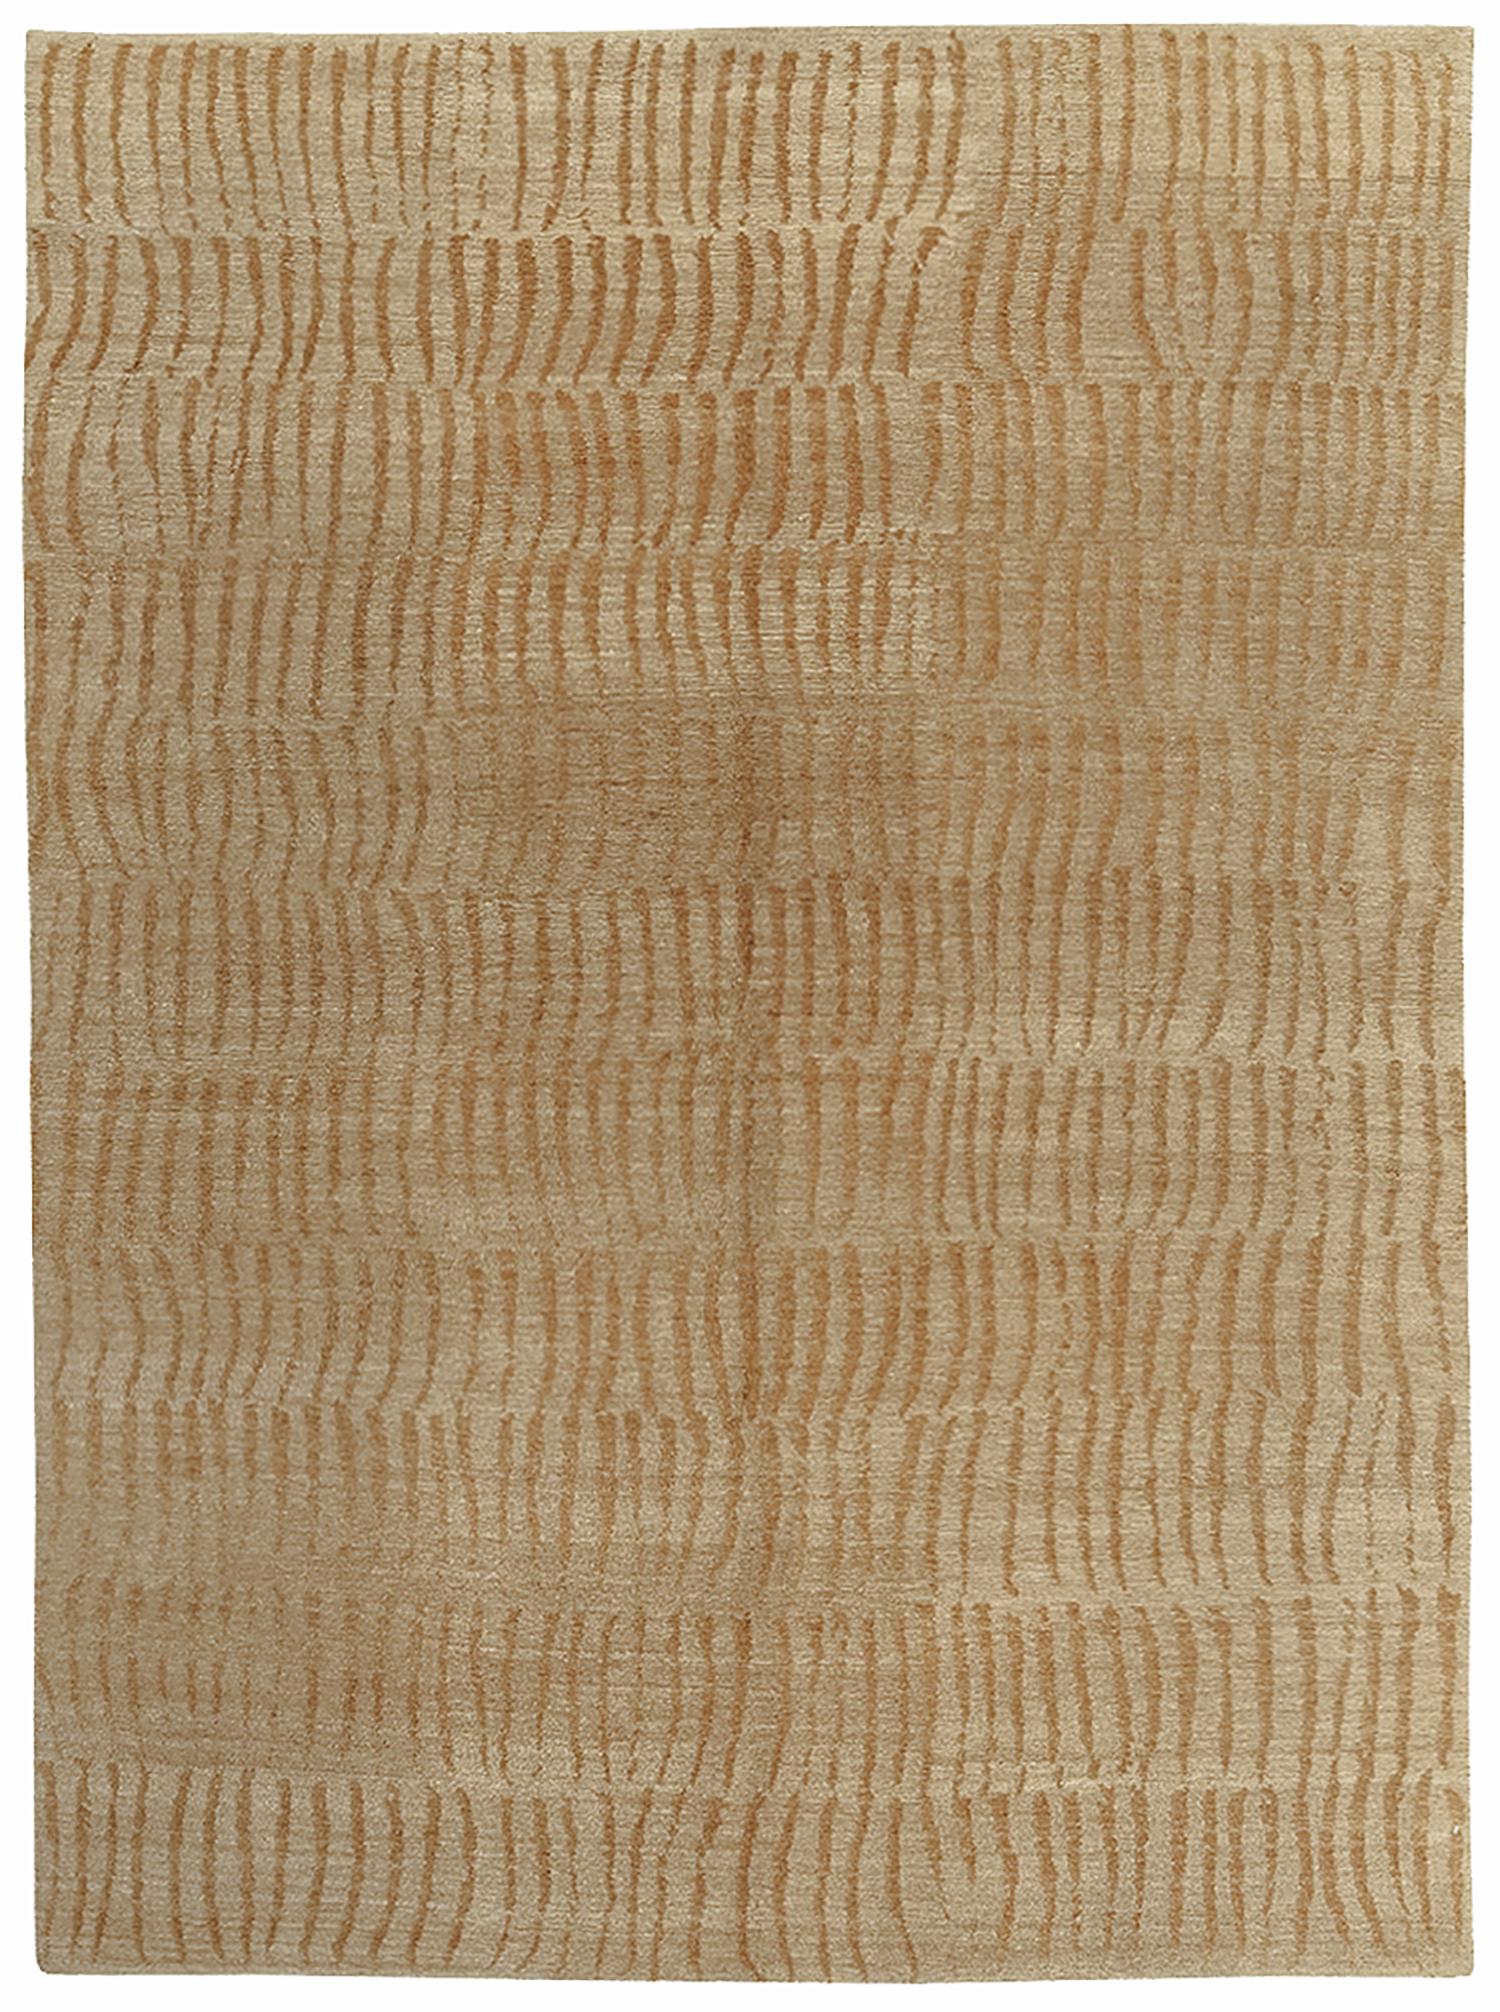 Bamboo III (61531)image